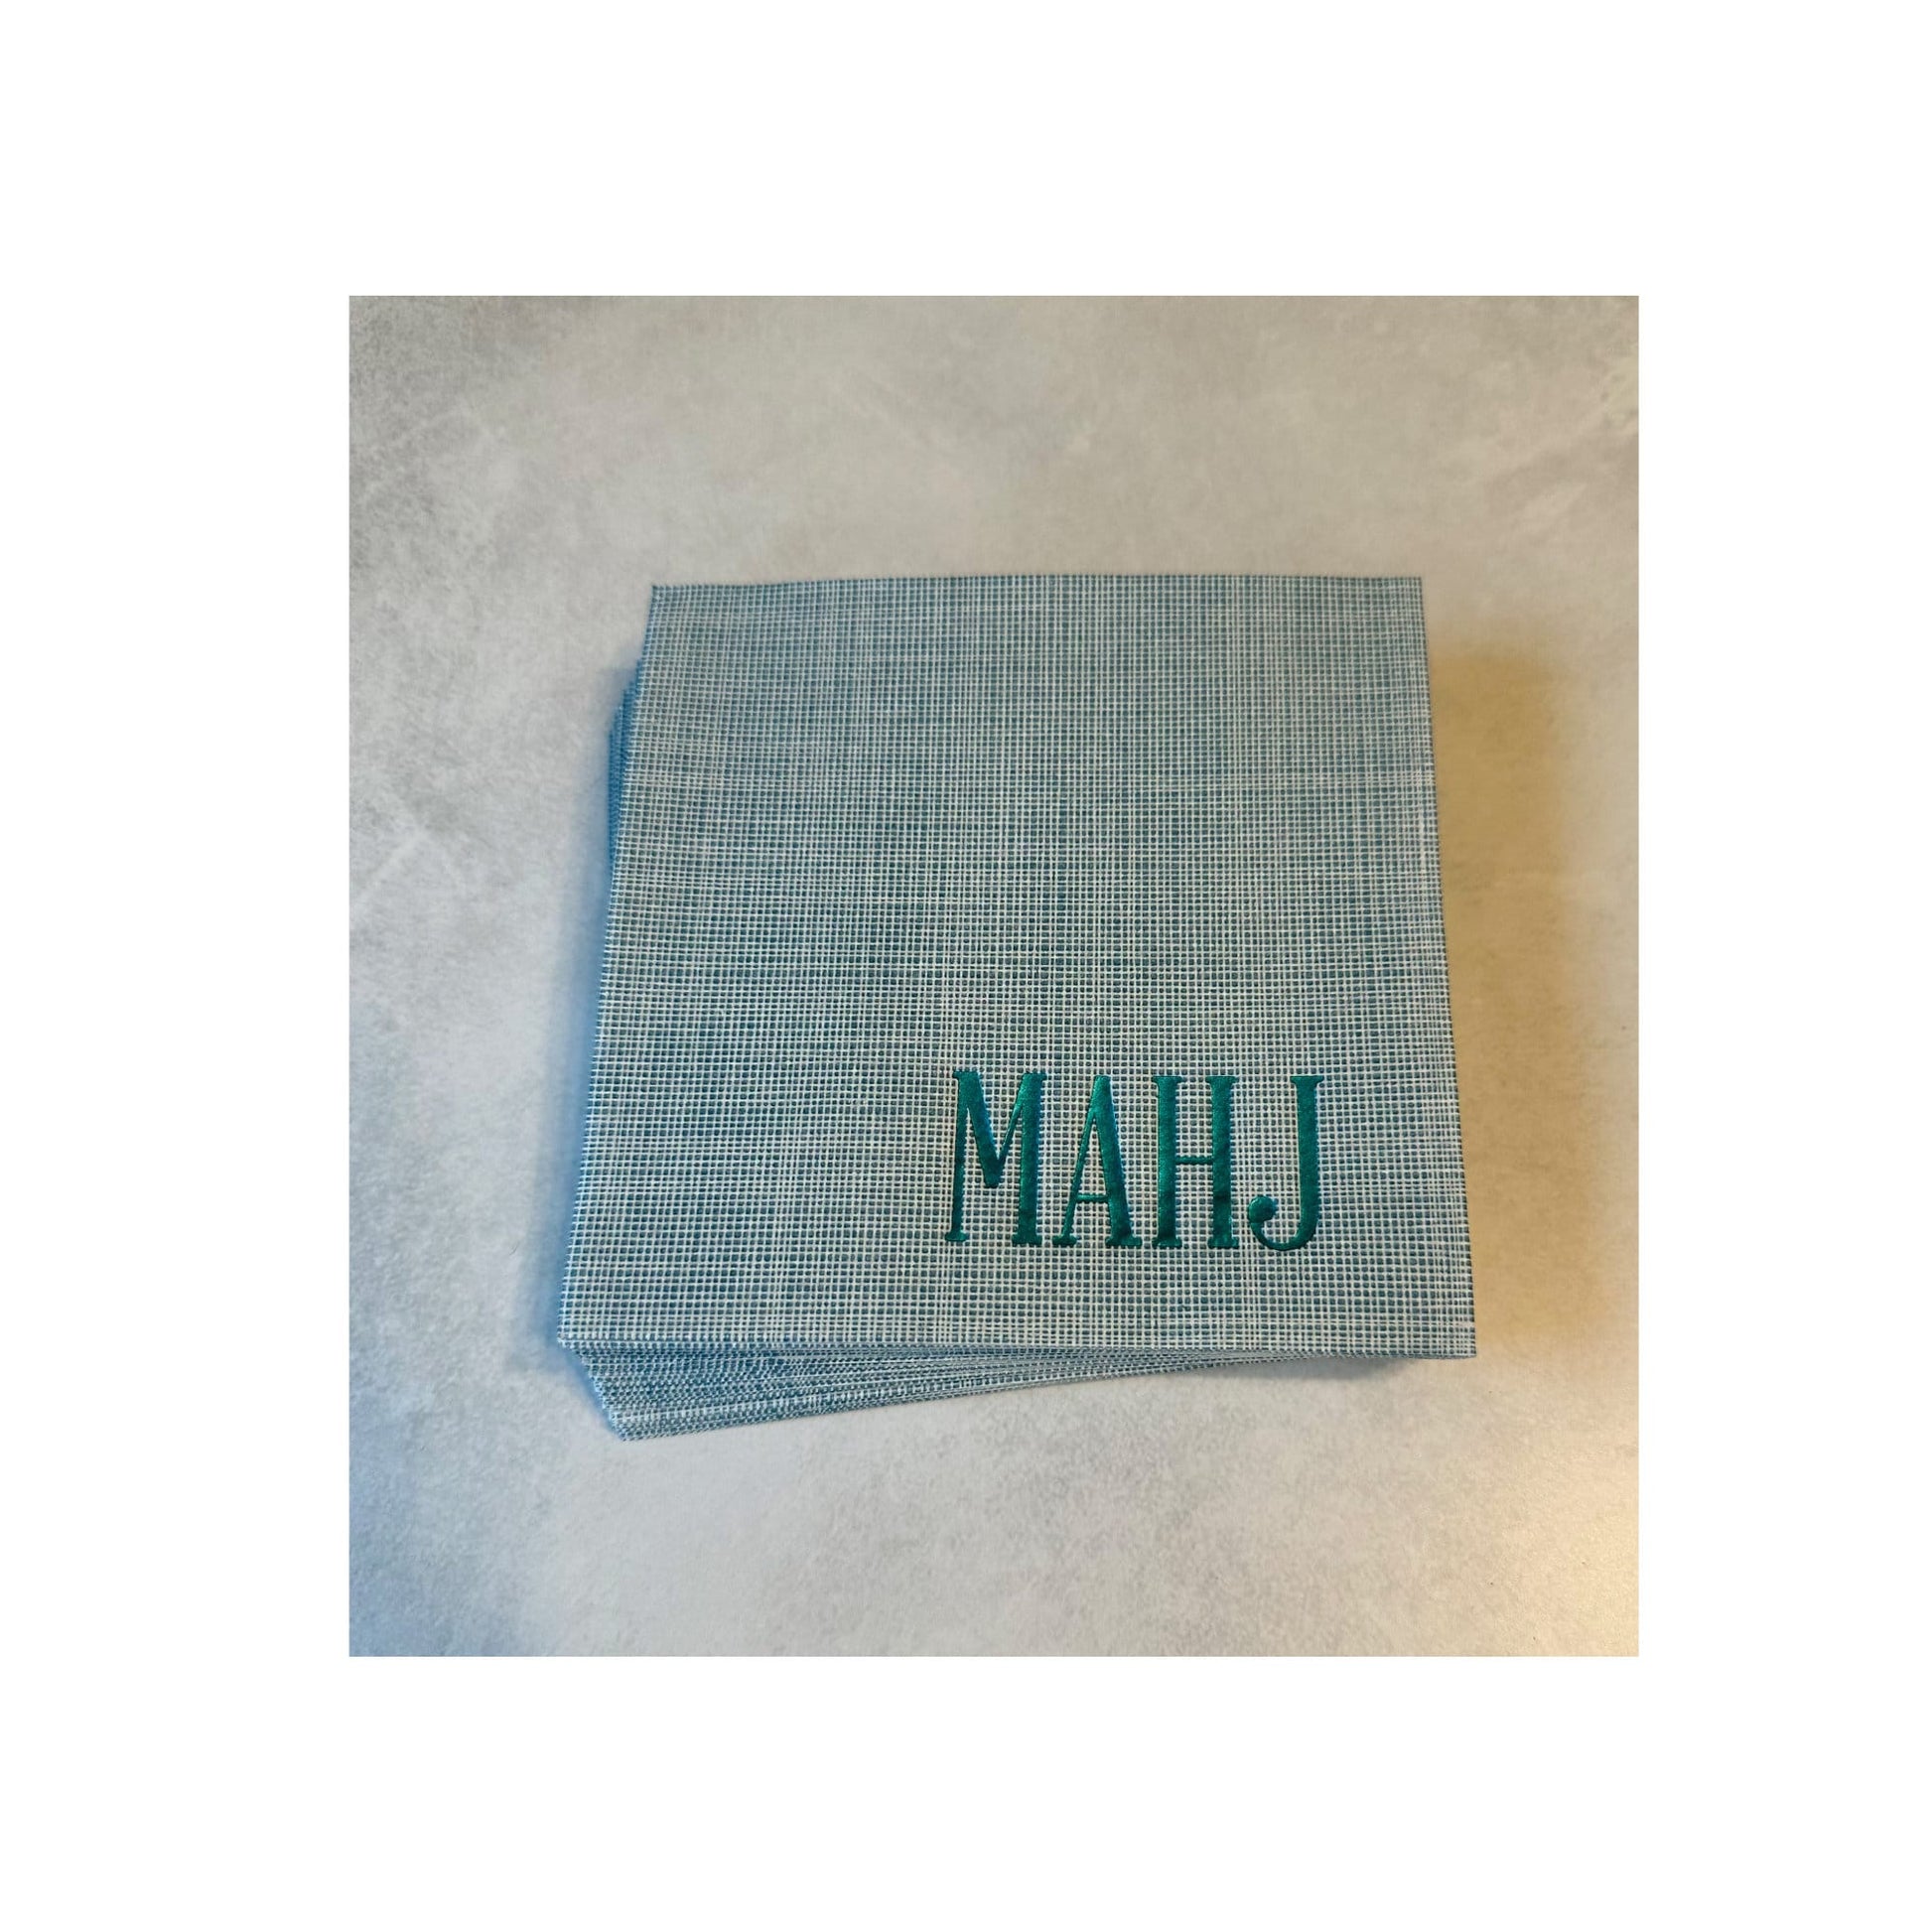 MAHJ Napkins, Turquoise and White Mah Jongg Napkins, Mah Jong Gift